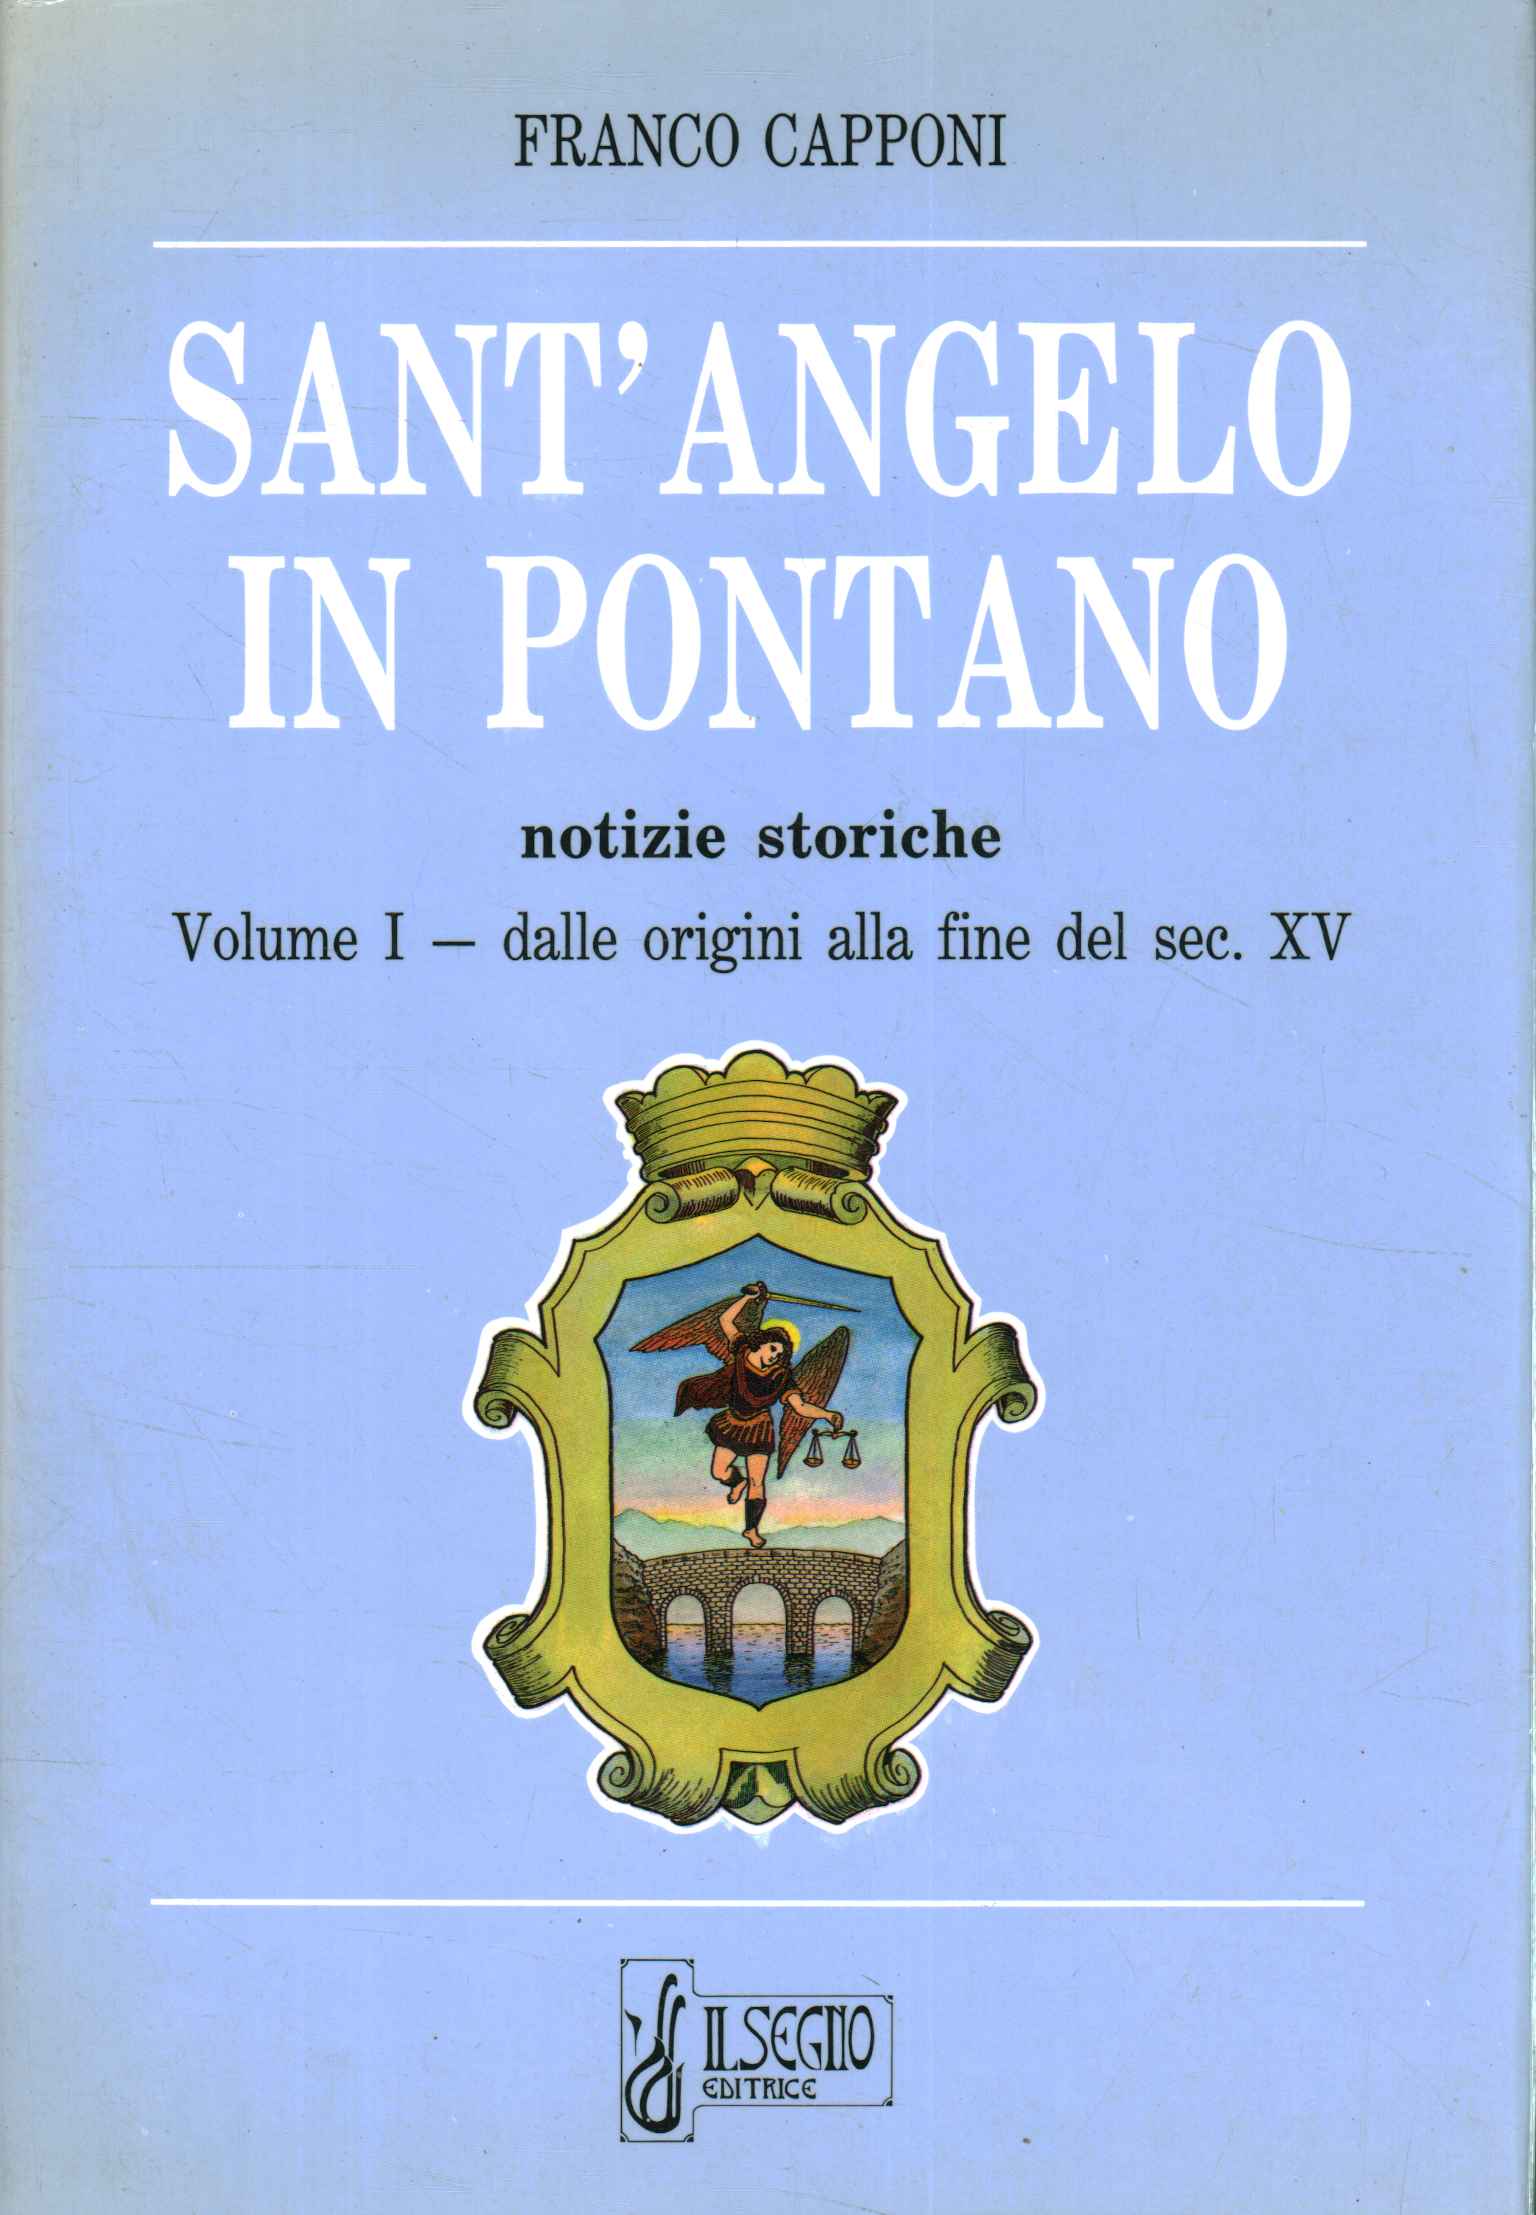 Sant'Angelo en Pontano